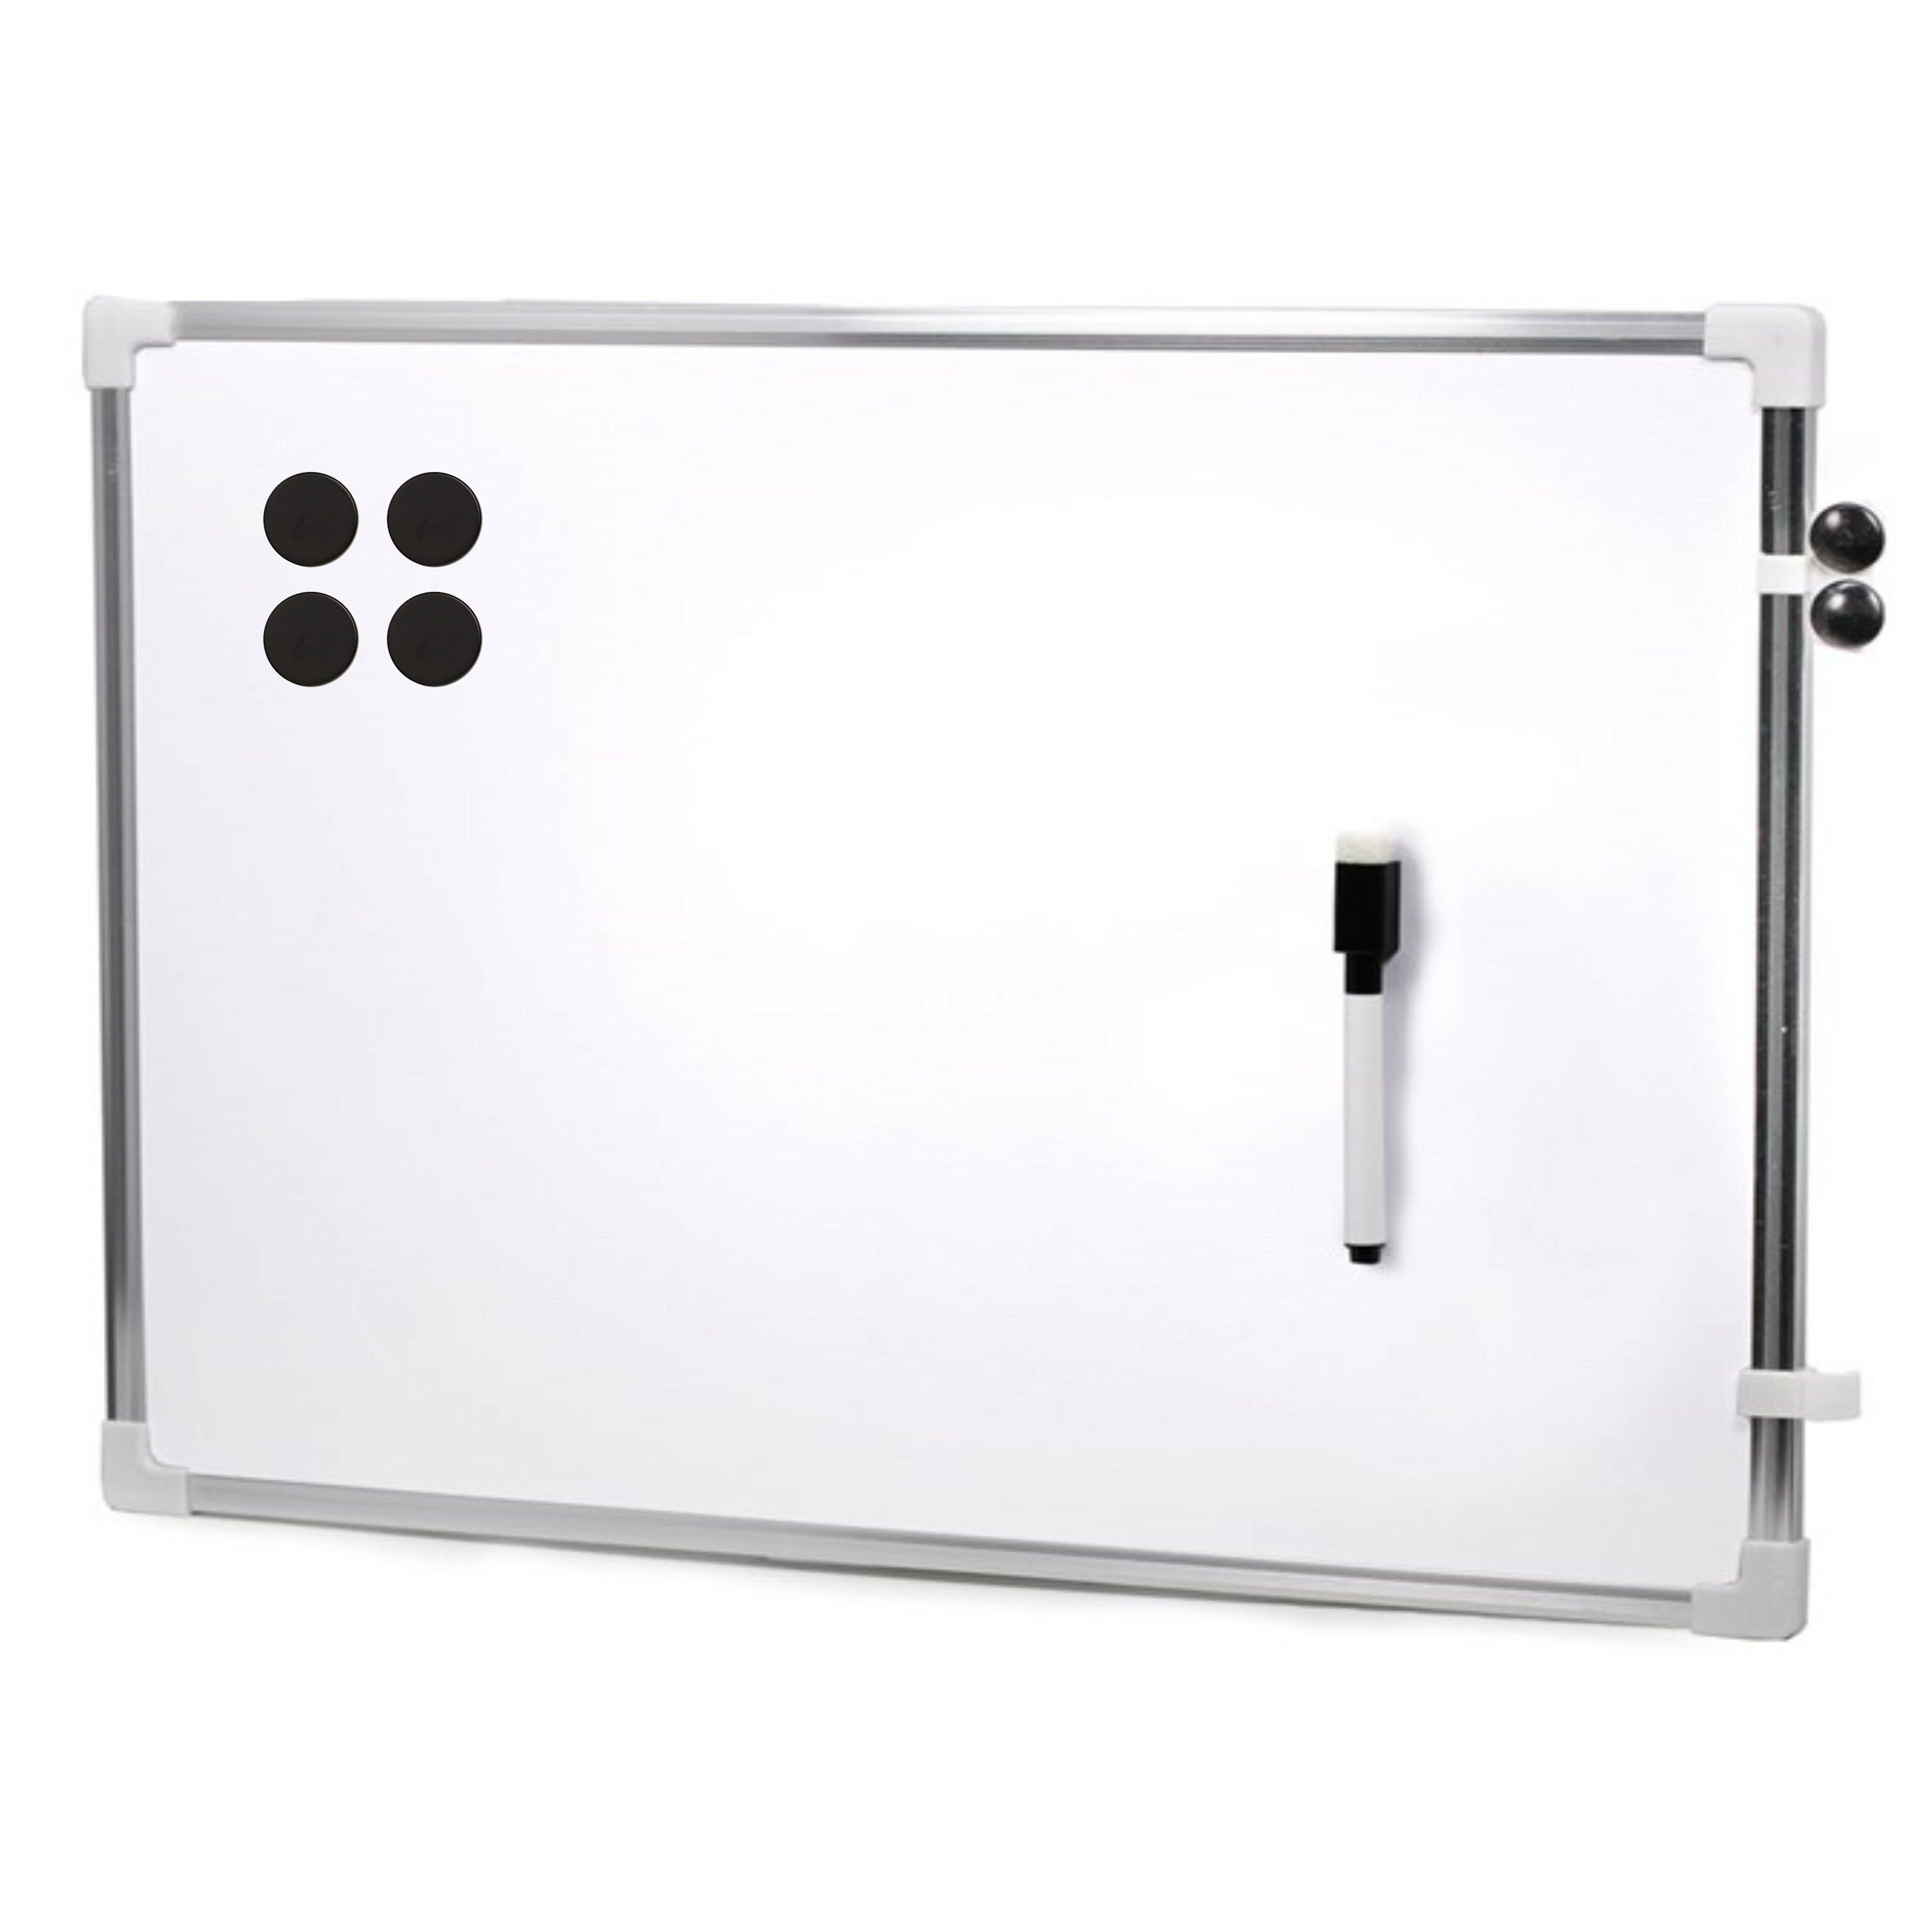 Magnetisch whiteboard met marker-magneten extra sterk 60 x 40 cm